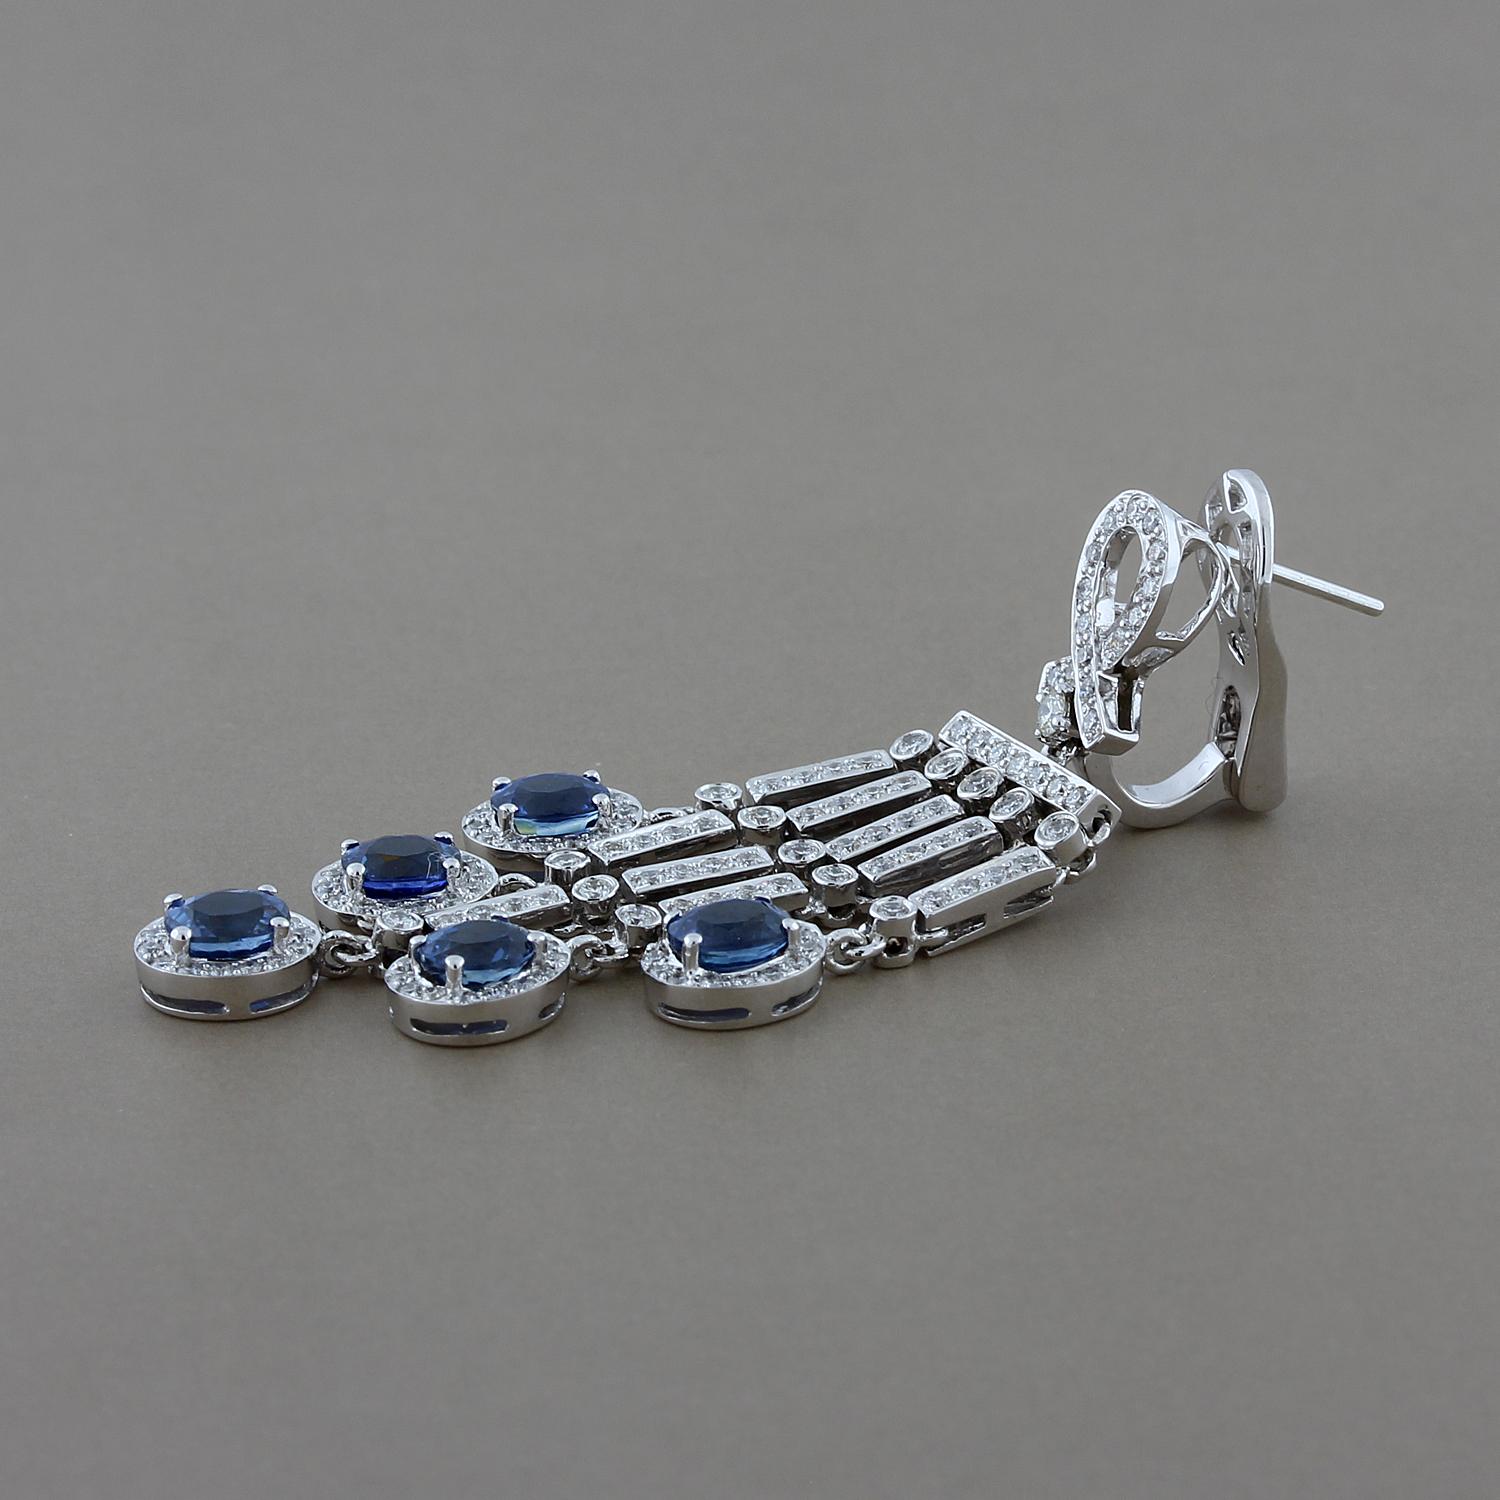 Anspruchsvolle Eleganz! Diese Ohrringe bestehen aus 5,43 Karat blauen Saphiren in ovaler Form, die von 2,09 Karat Diamanten im Rundschliff akzentuiert werden. Diese Kronleuchter-Ohrringe sind aus 18 Karat Weißgold gefertigt und mit Omega-Clips